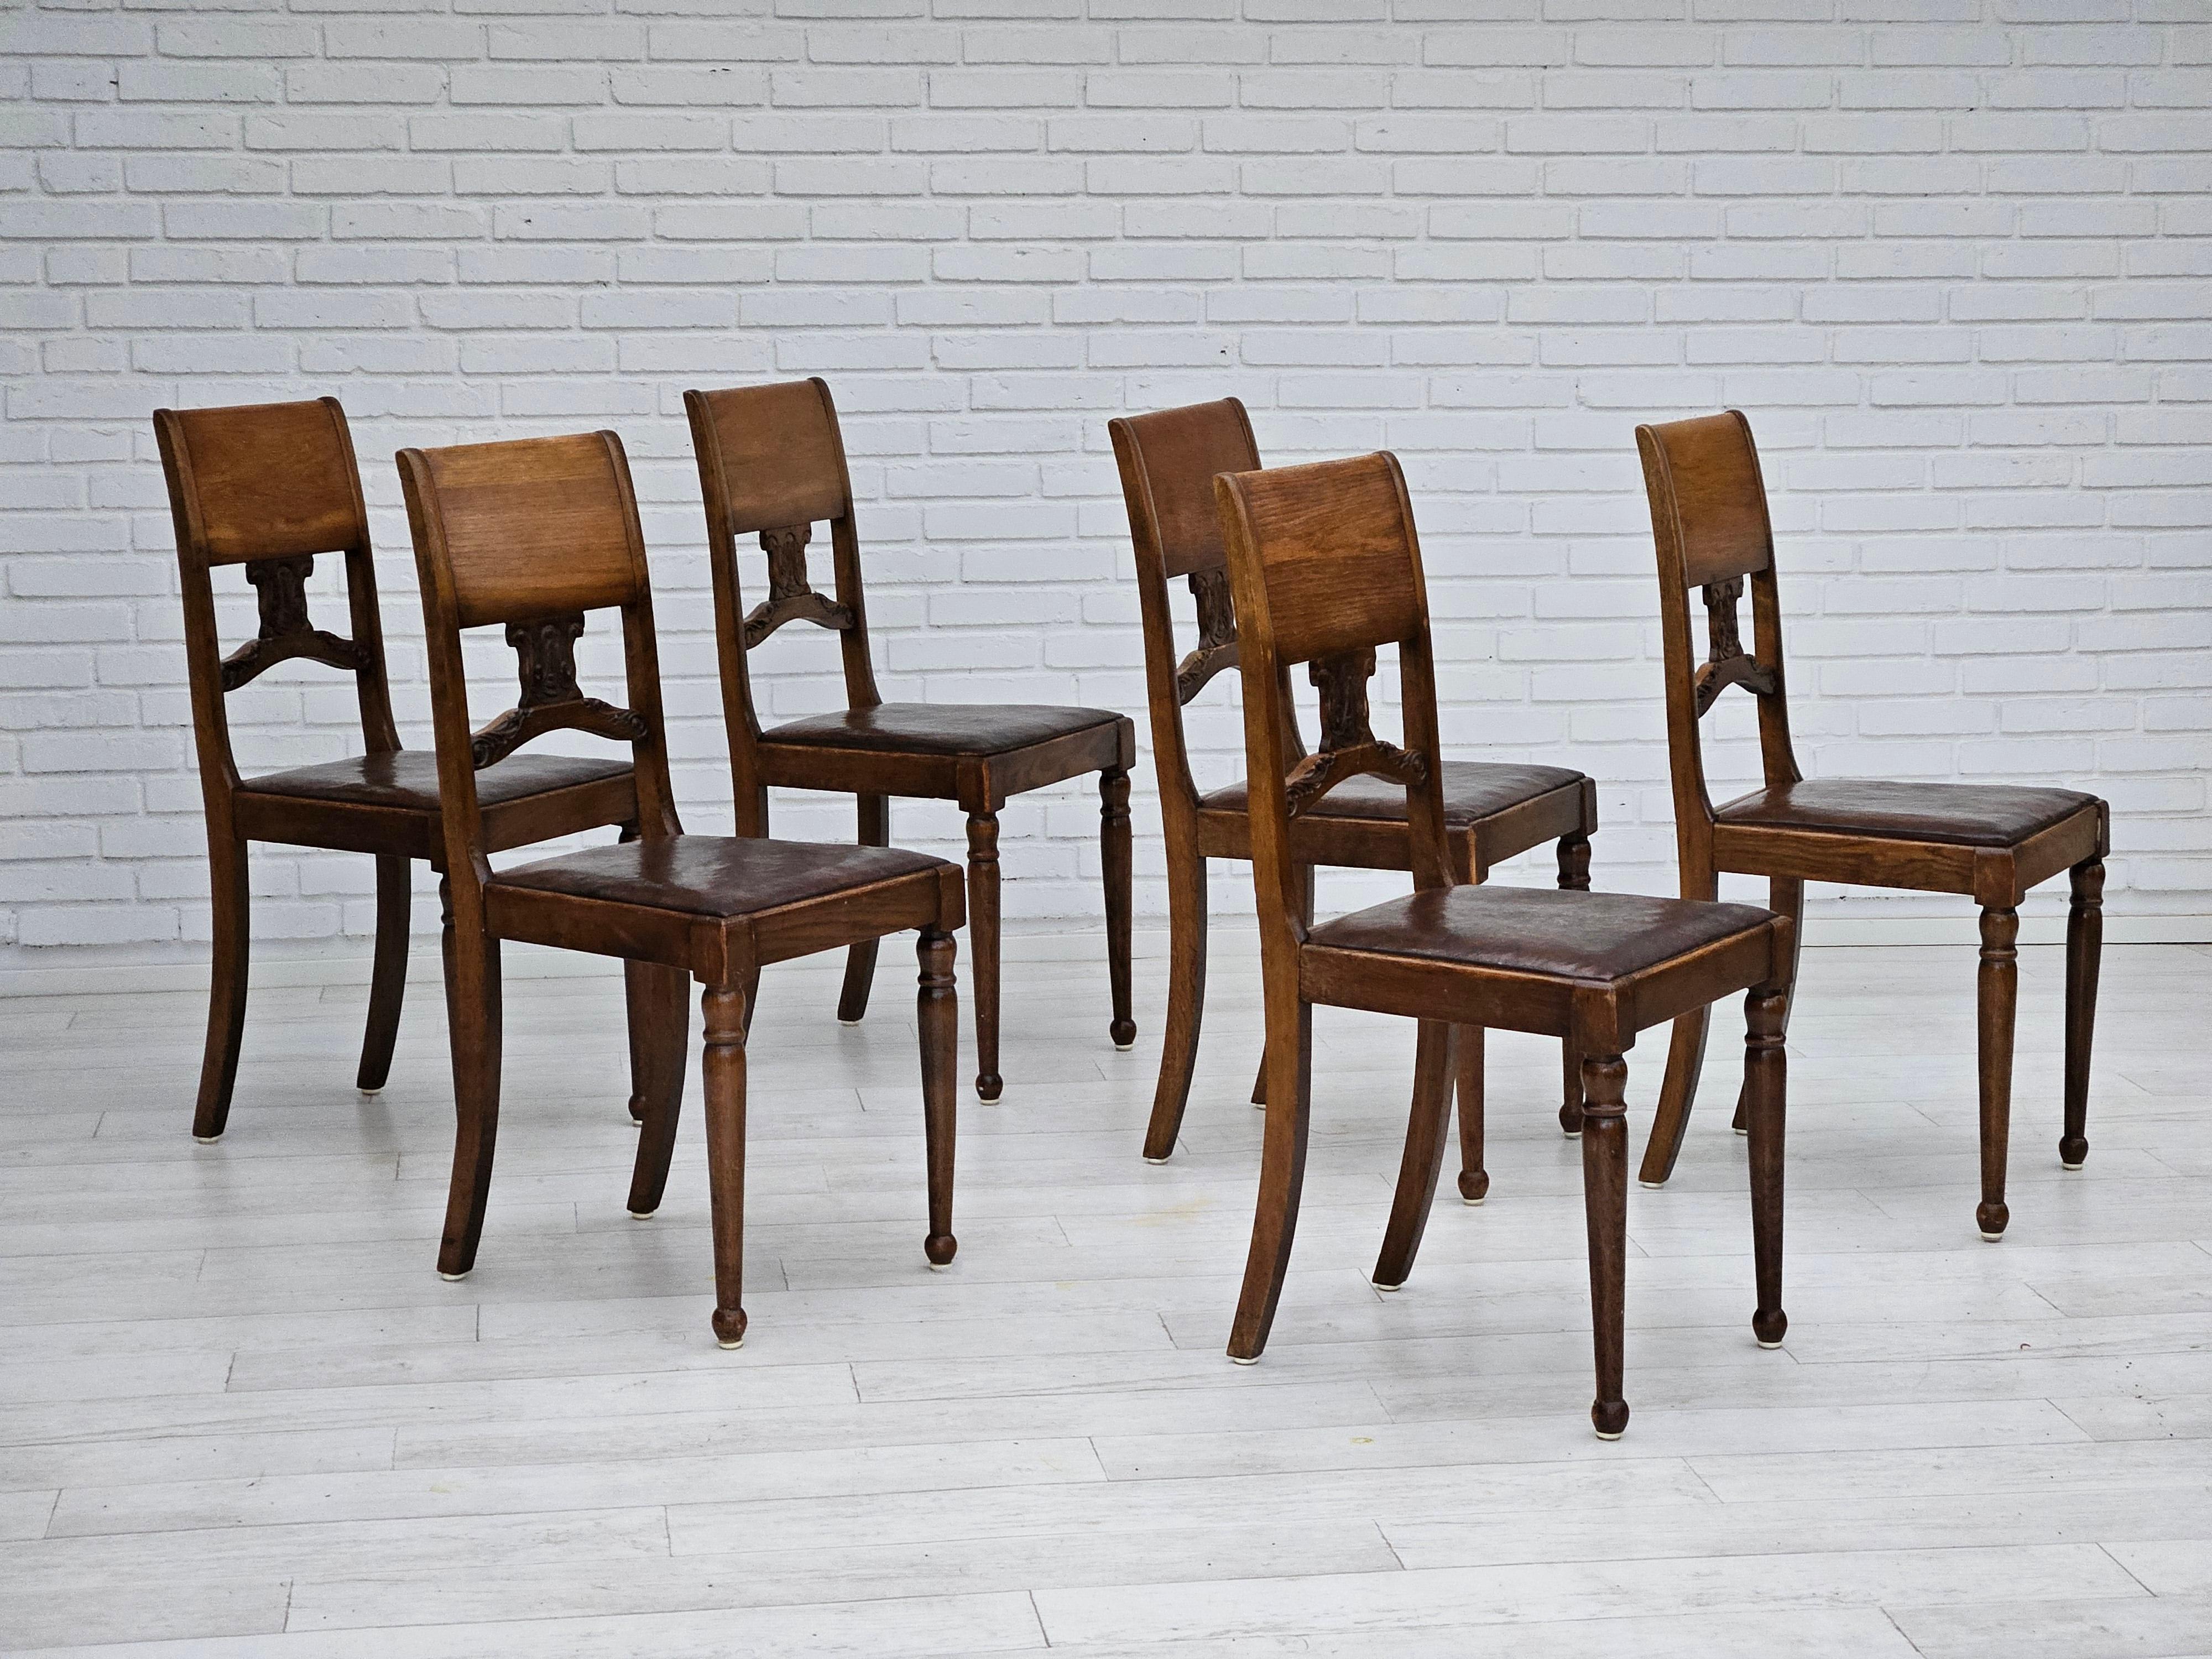 1930er Jahre, Satz von 6 Stühlen in gutem Originalzustand: keine Gerüche und keine Flecken. Leder und Eichenholz. Original kühles Leder und Holzpatina. Hergestellt von einem skandinavischen Möbelhersteller um 1930.